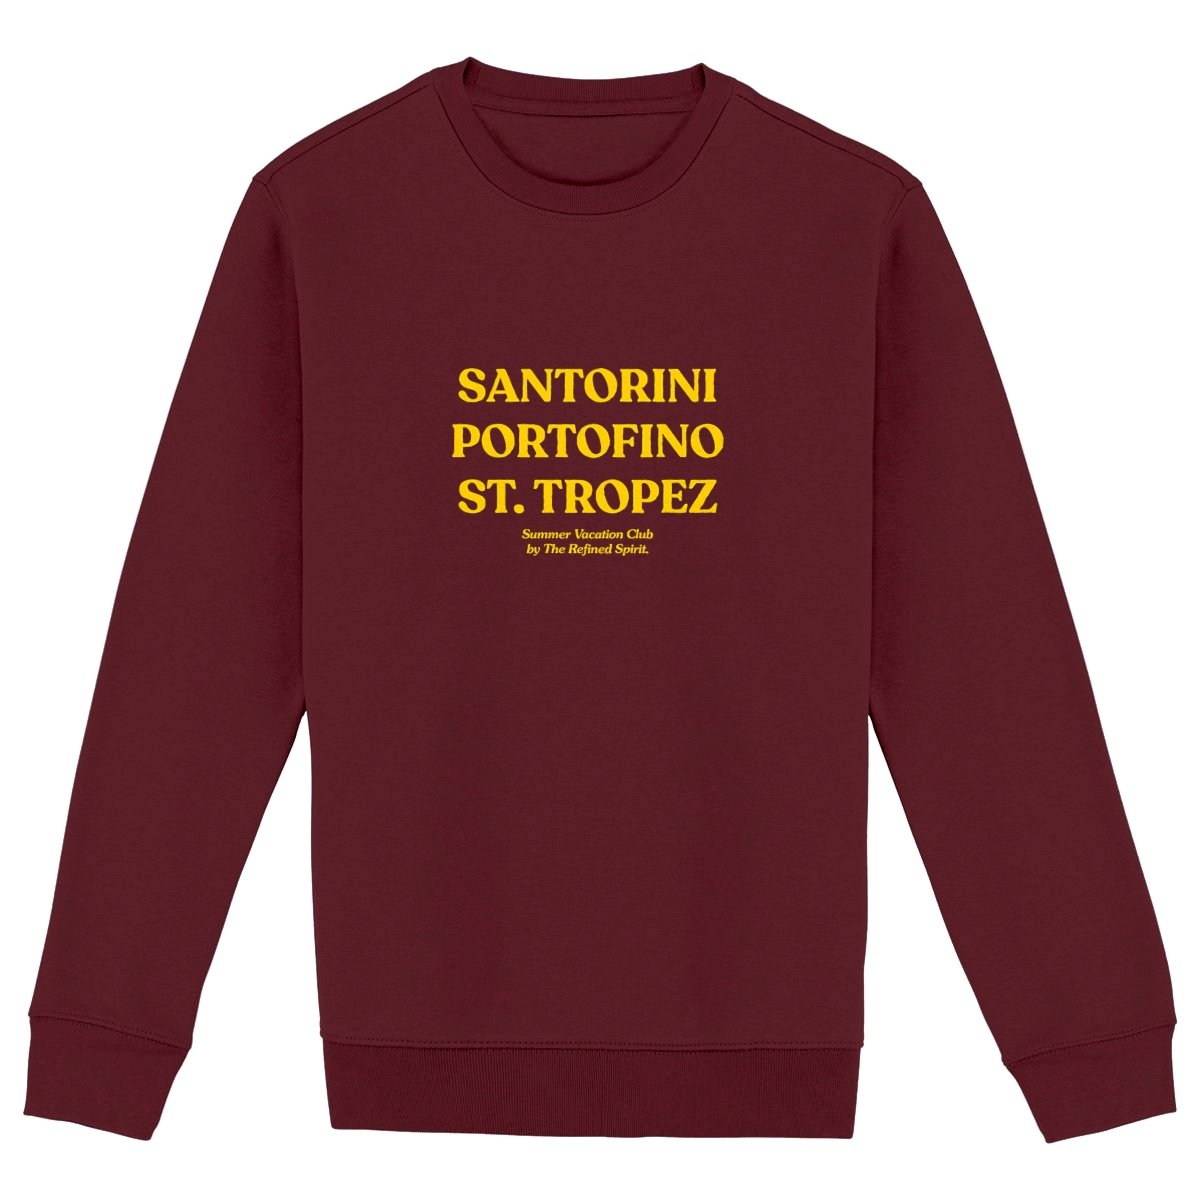 Santorini Portofino St. Tropez - Organic Sweatshirt